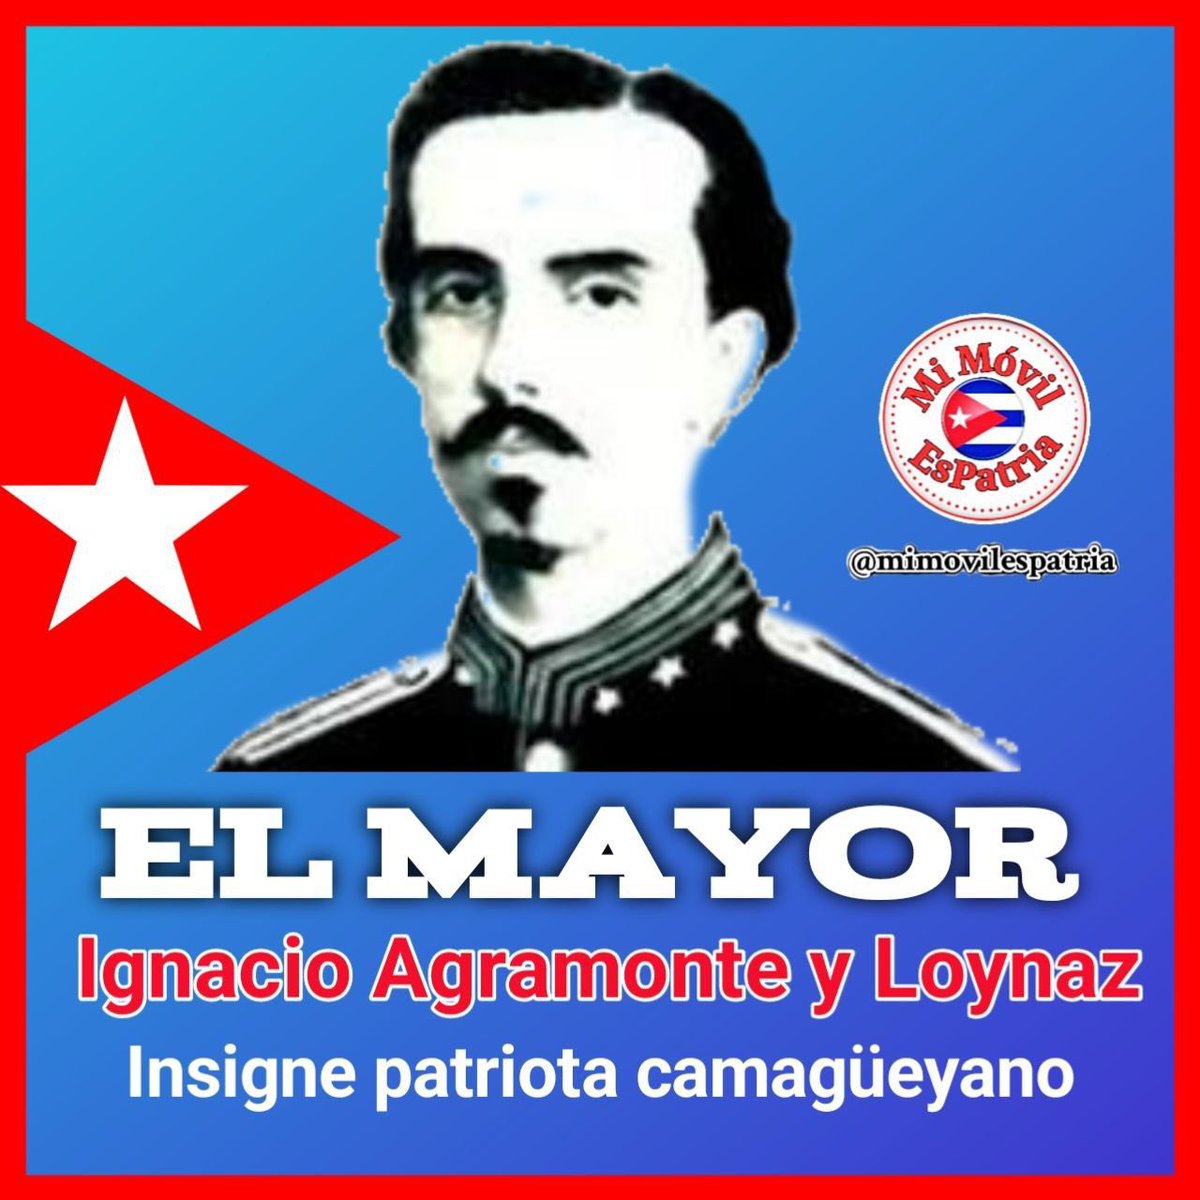 En la historia de Cuba,el nombre de Ignacio Agramonte resuena con valentía y sacrificio. Su legado como luchador por la independencia y su caída en combate en 1873 en Jimaguayú lo convierten en un símbolo de la lucha por la libertad #CubaViveEnSuHistoria #SanctiSpítitusEnMarcha